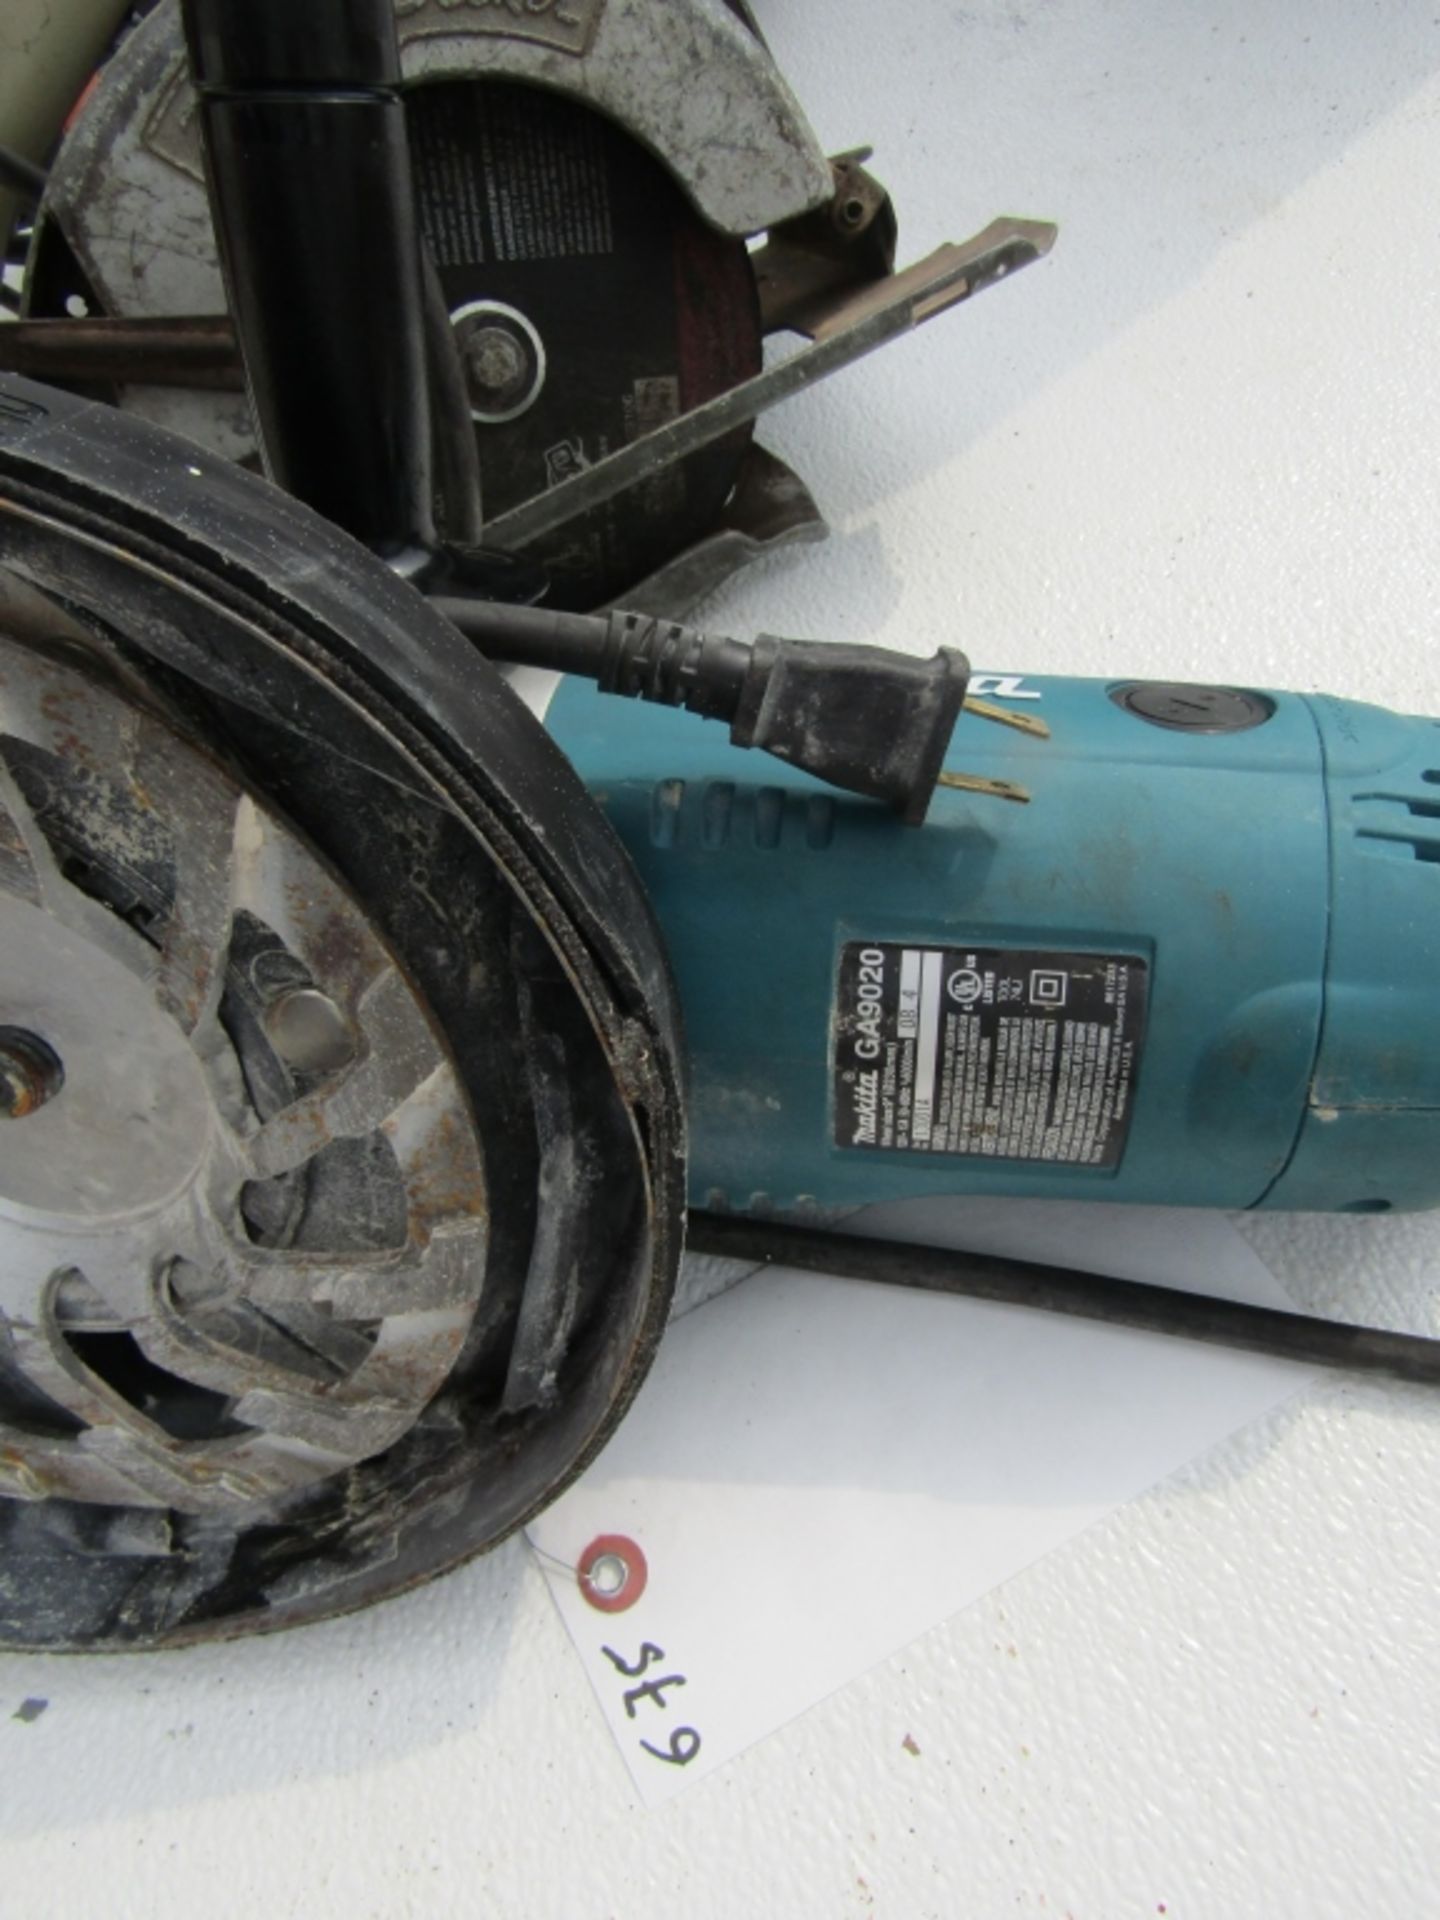 Makita GA9020 Metal Grinder, Model GA9020, Serial #13001A, 9" Wheel size, - Image 2 of 2